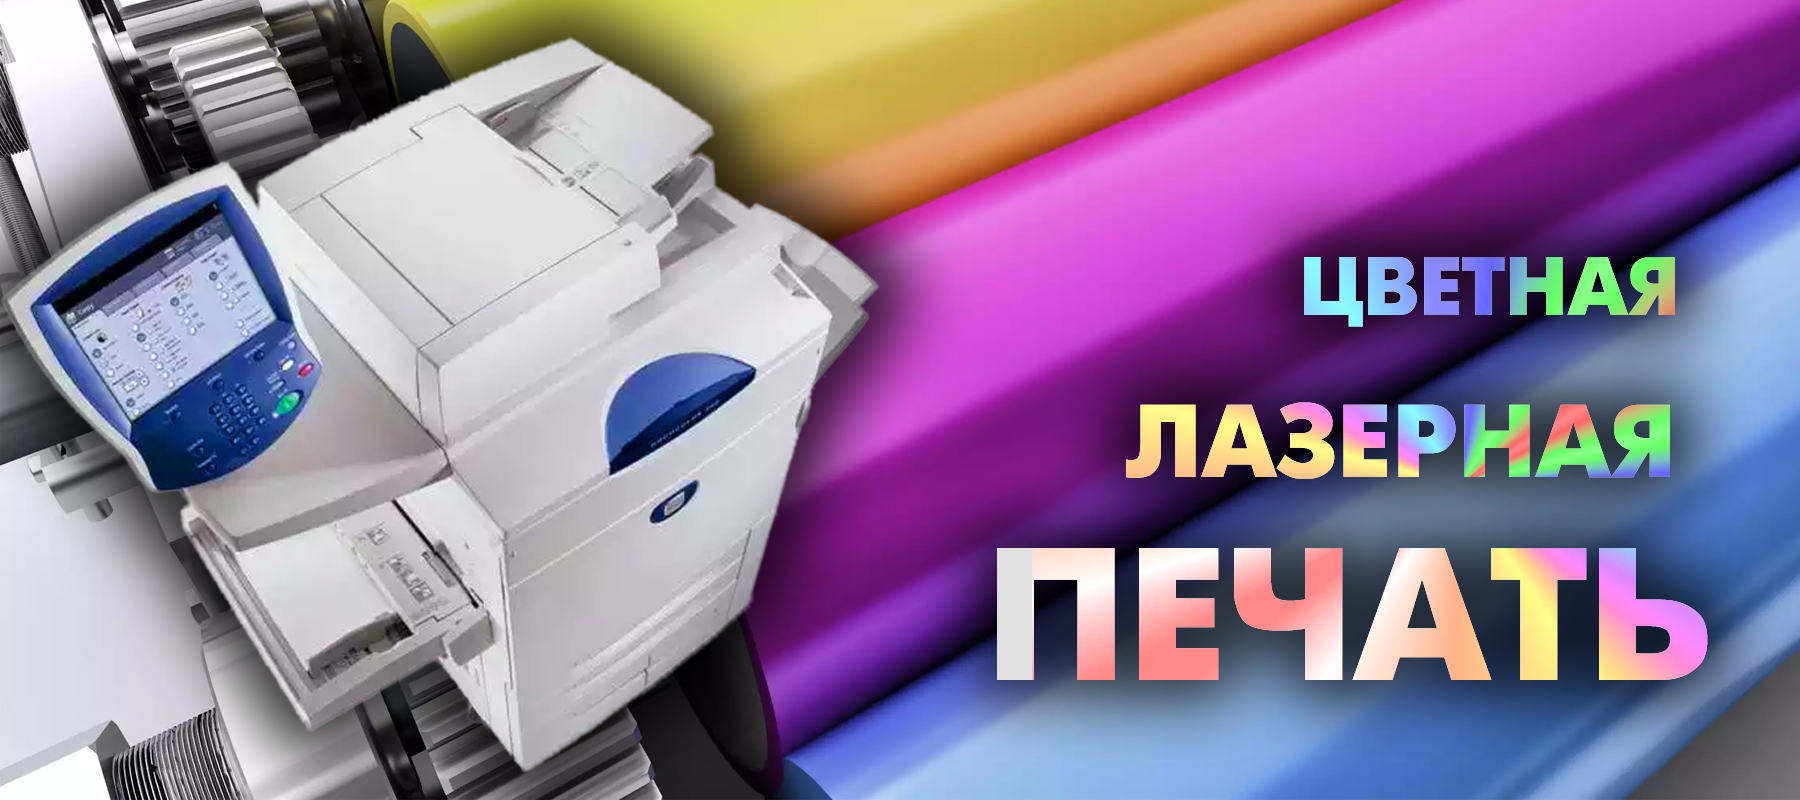 Реклама печатать. Цветная лазерная печать. Цифровая печать. Распечатки цветные. Цветная цифровая печать.